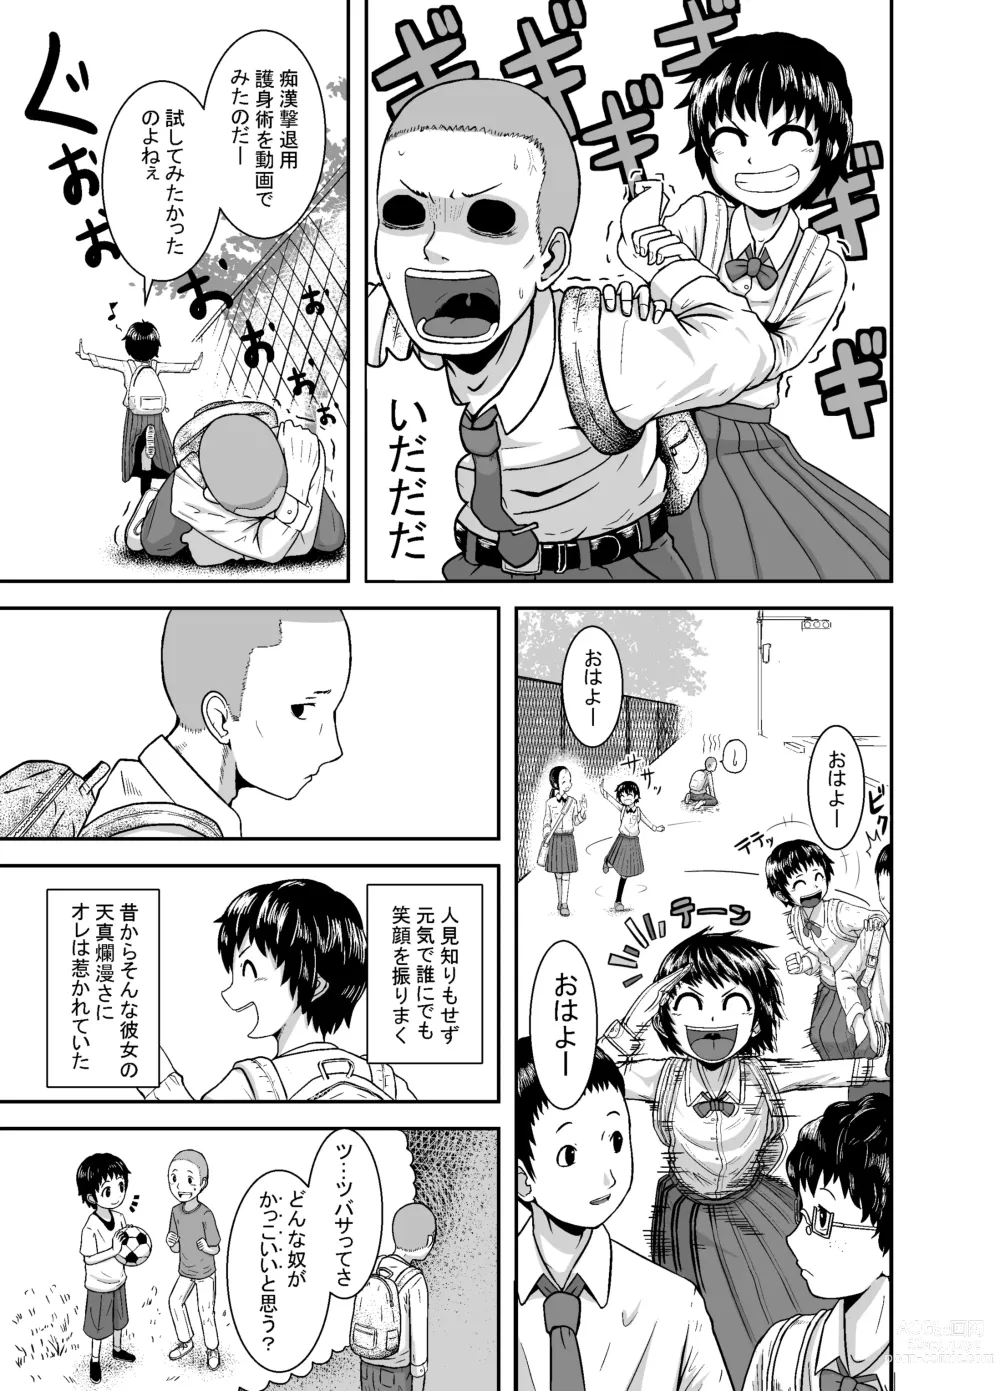 Page 4 of doujinshi Kimi ga Yarareru Kurai nara ~Genkikko Crisis~